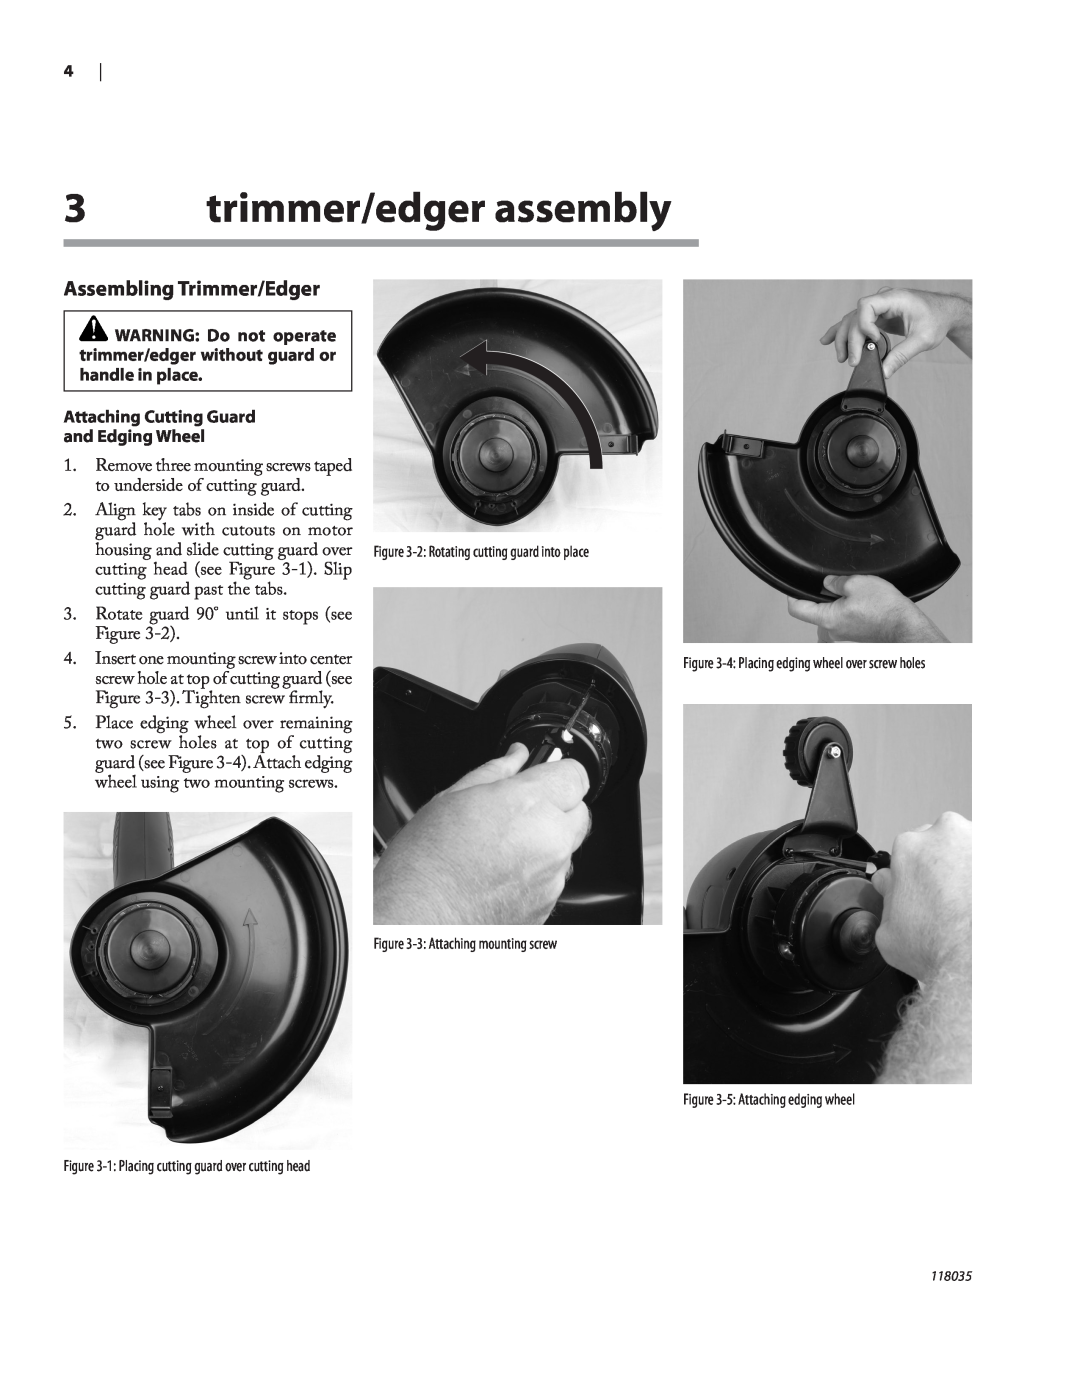 Remington Power Tools ST3812B, ST4514B owner manual trimmer/edger assembly, Assembling Trimmer/Edger 